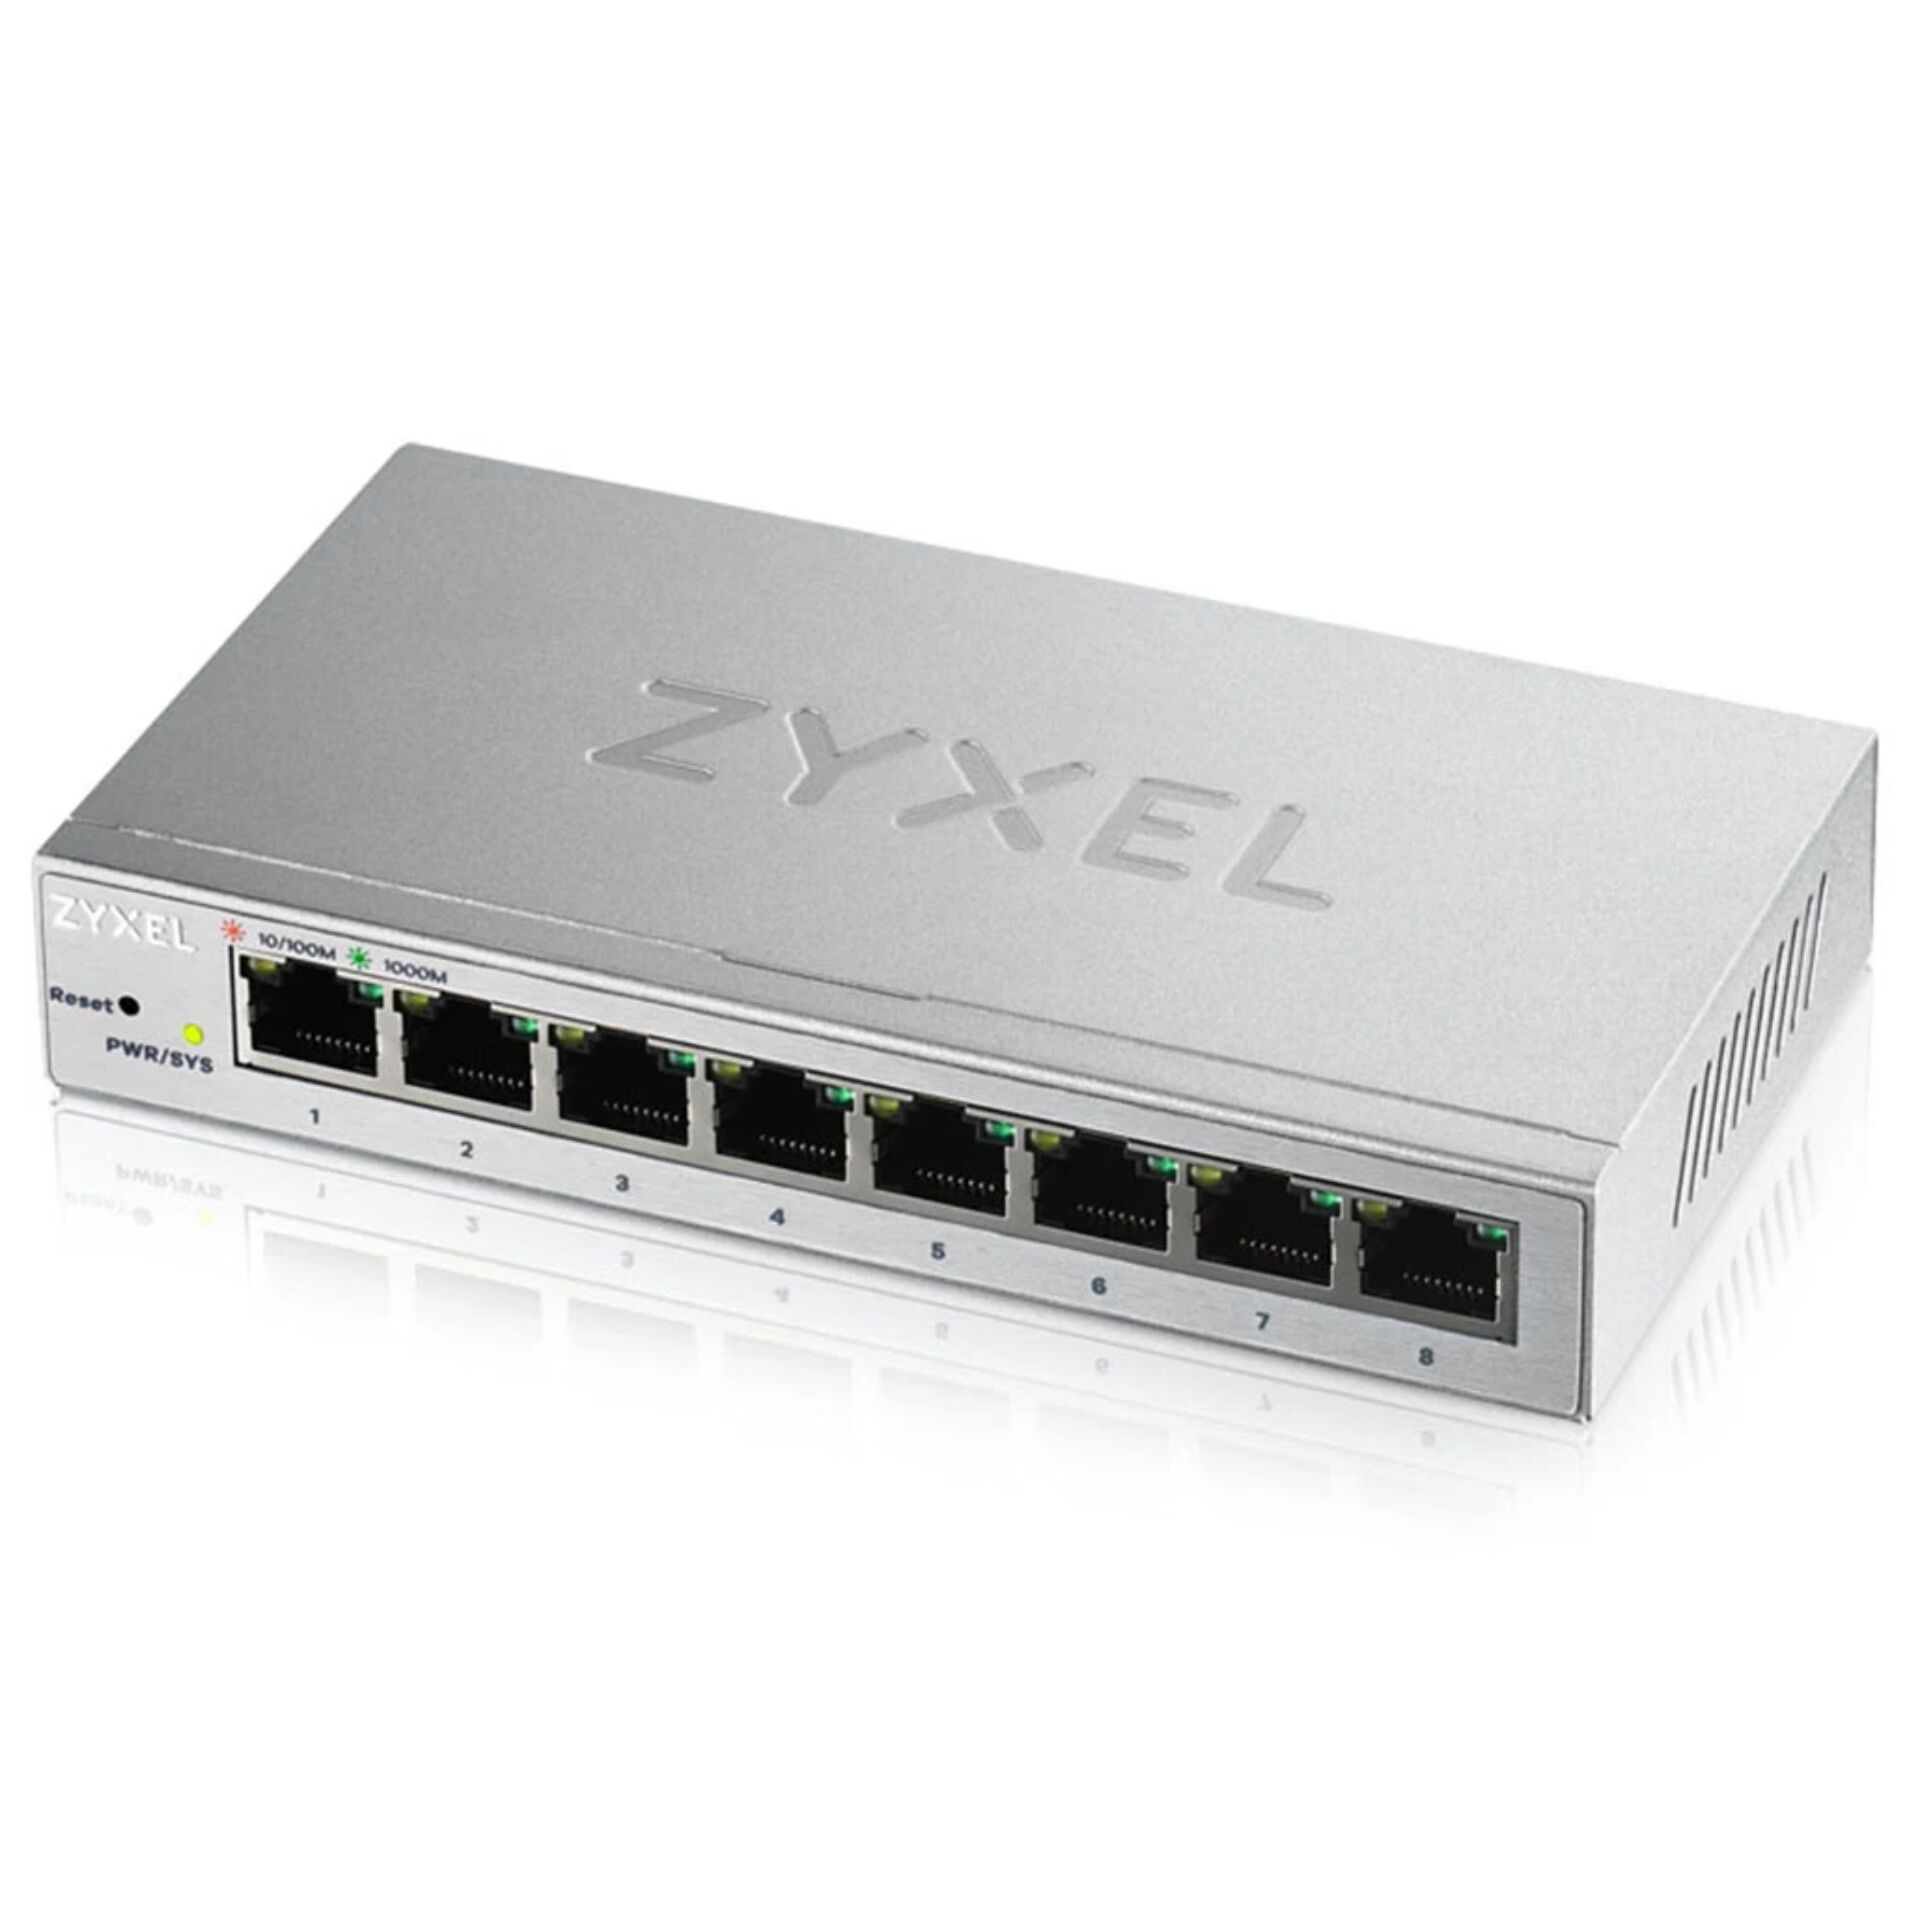 Zyxel GS1200-8 8-Port Switch